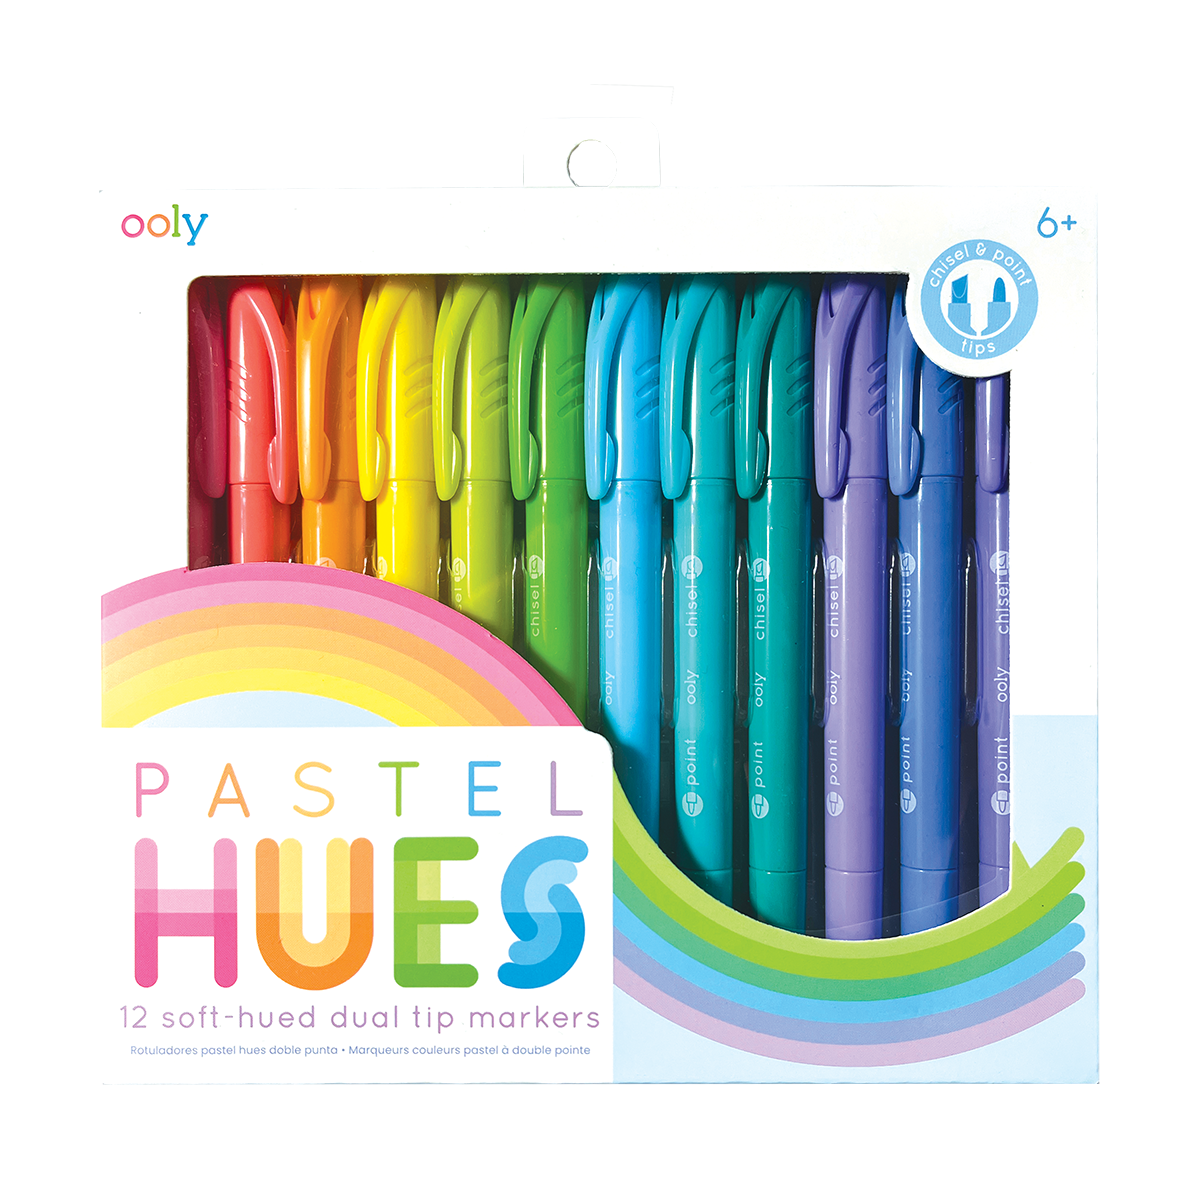 OOLY Pastel Hues Dual Tip Markers in packaging